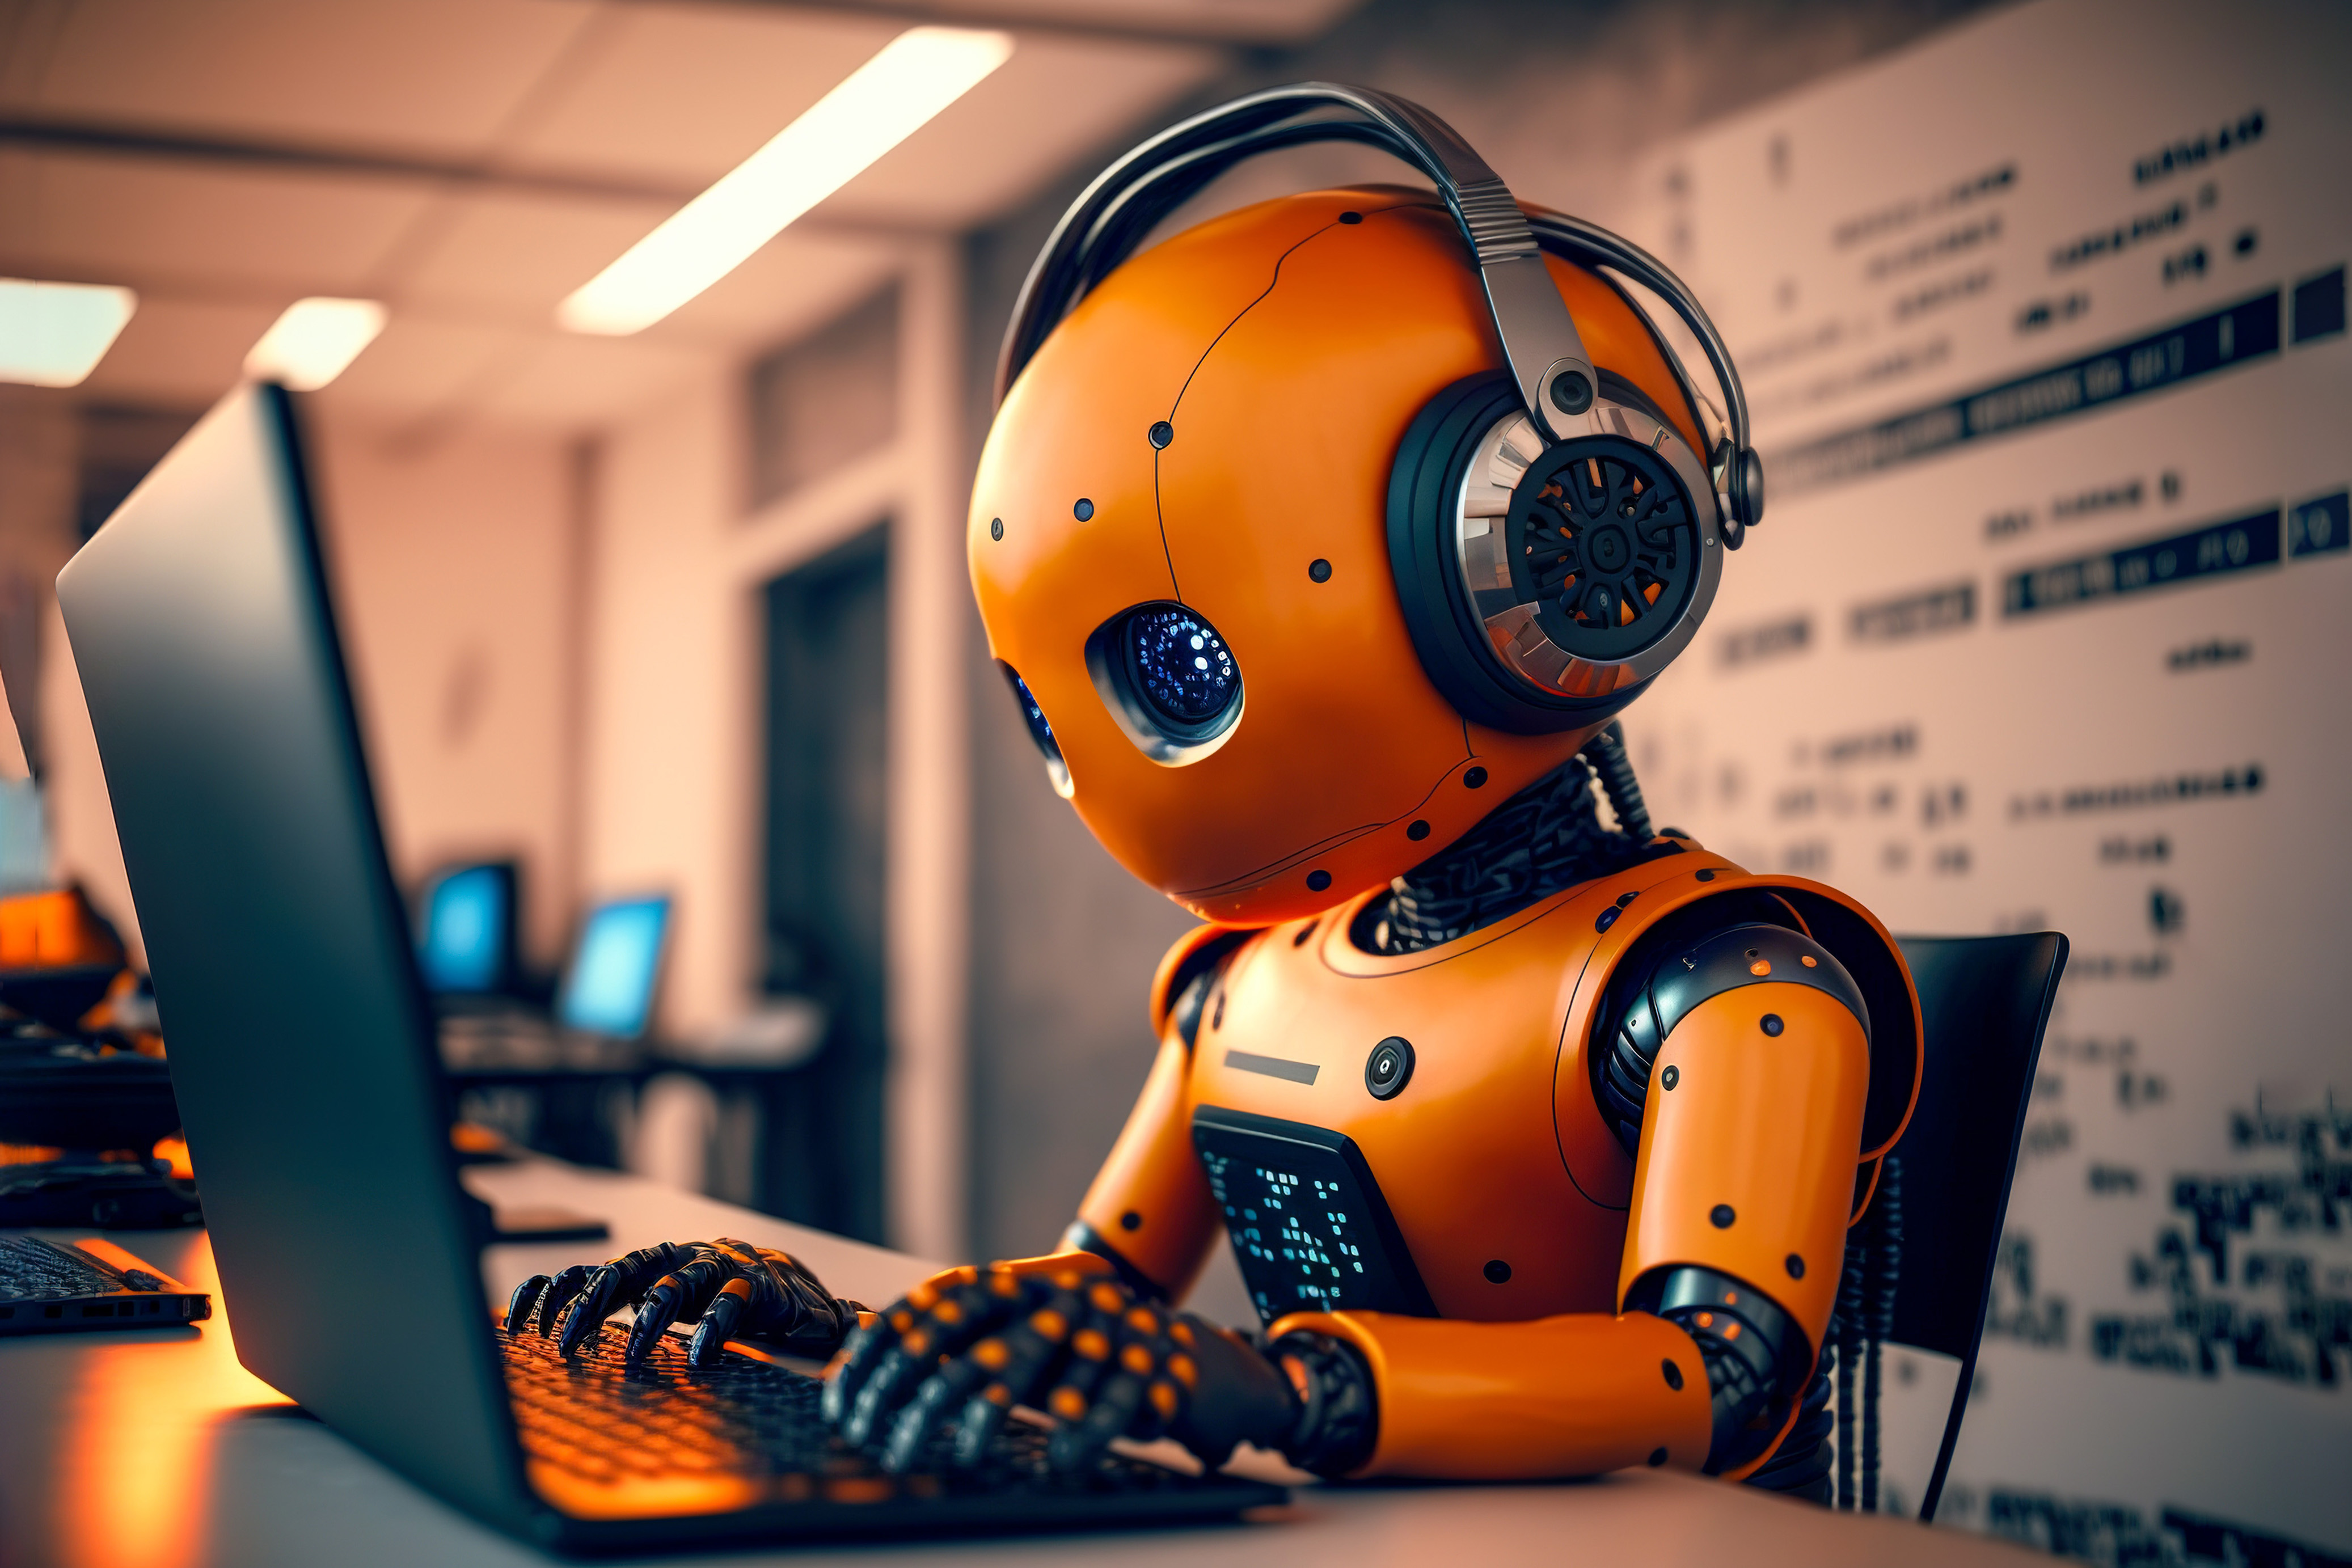 dag van de telecommunicatie - oranje robot achter laptop